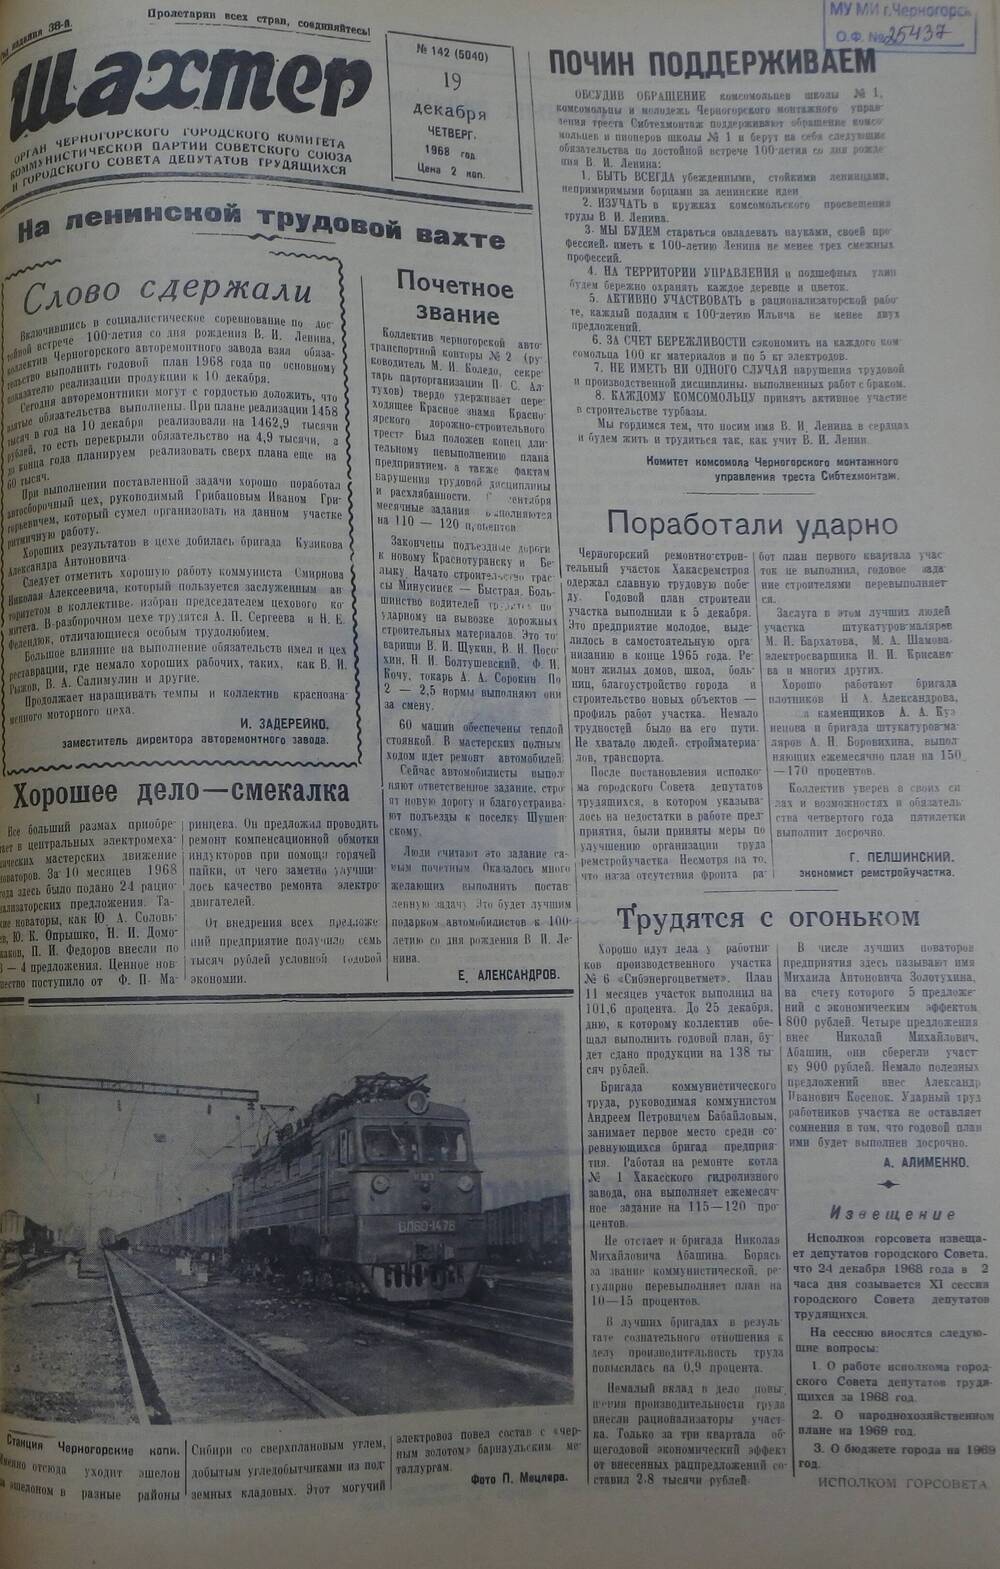 Газета «Шахтер». Выпуск № 142 от 19.12.1968 г.